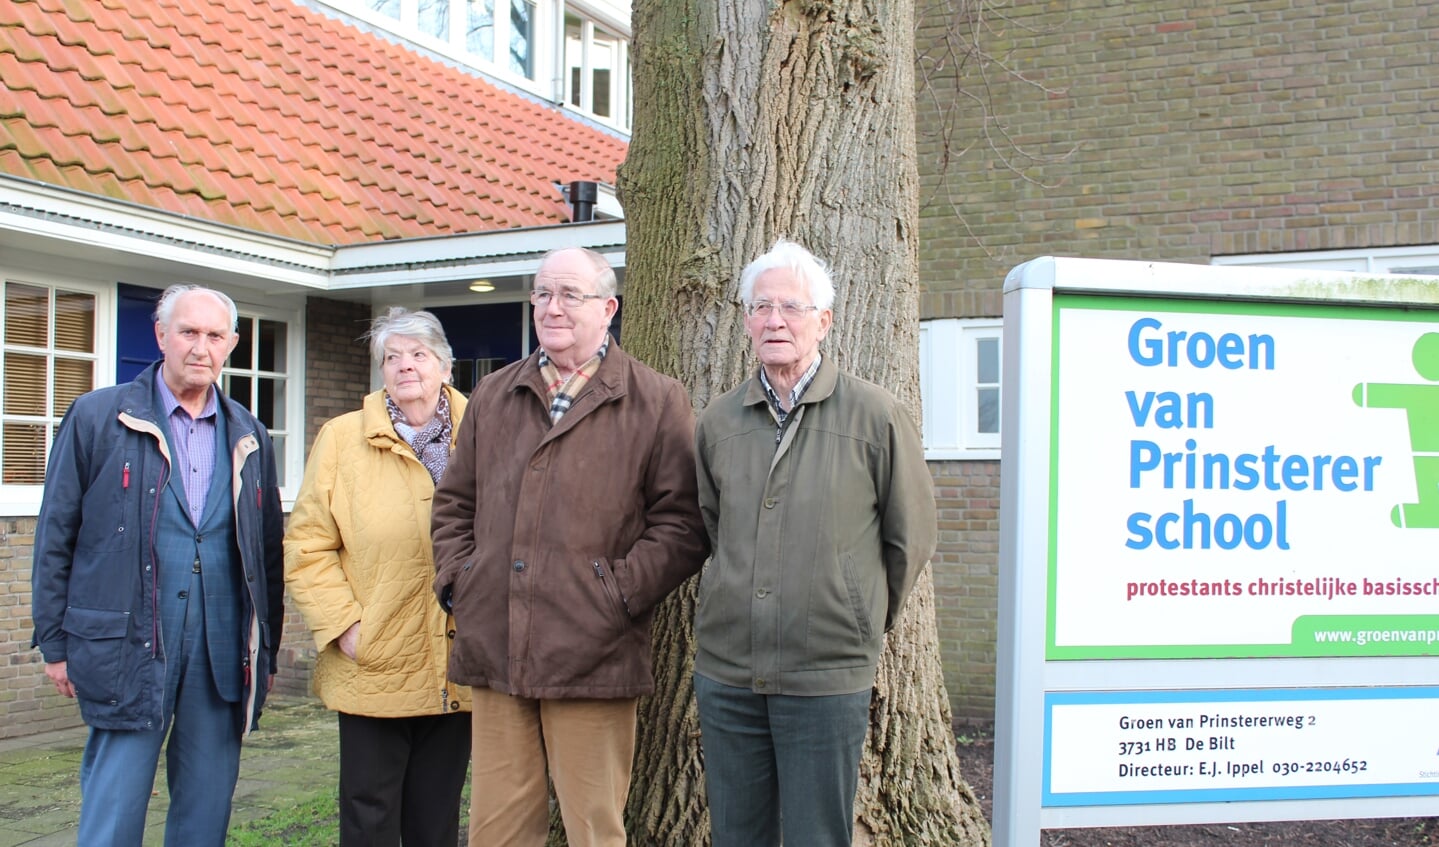 68 jaar later staan v.l.n.r. Chris Onwezen, Ger en Niek van Poelgeest en Joost Paauw weer voor de inmiddels verbouwde Groen van Prinsterer-school in De Bilt.